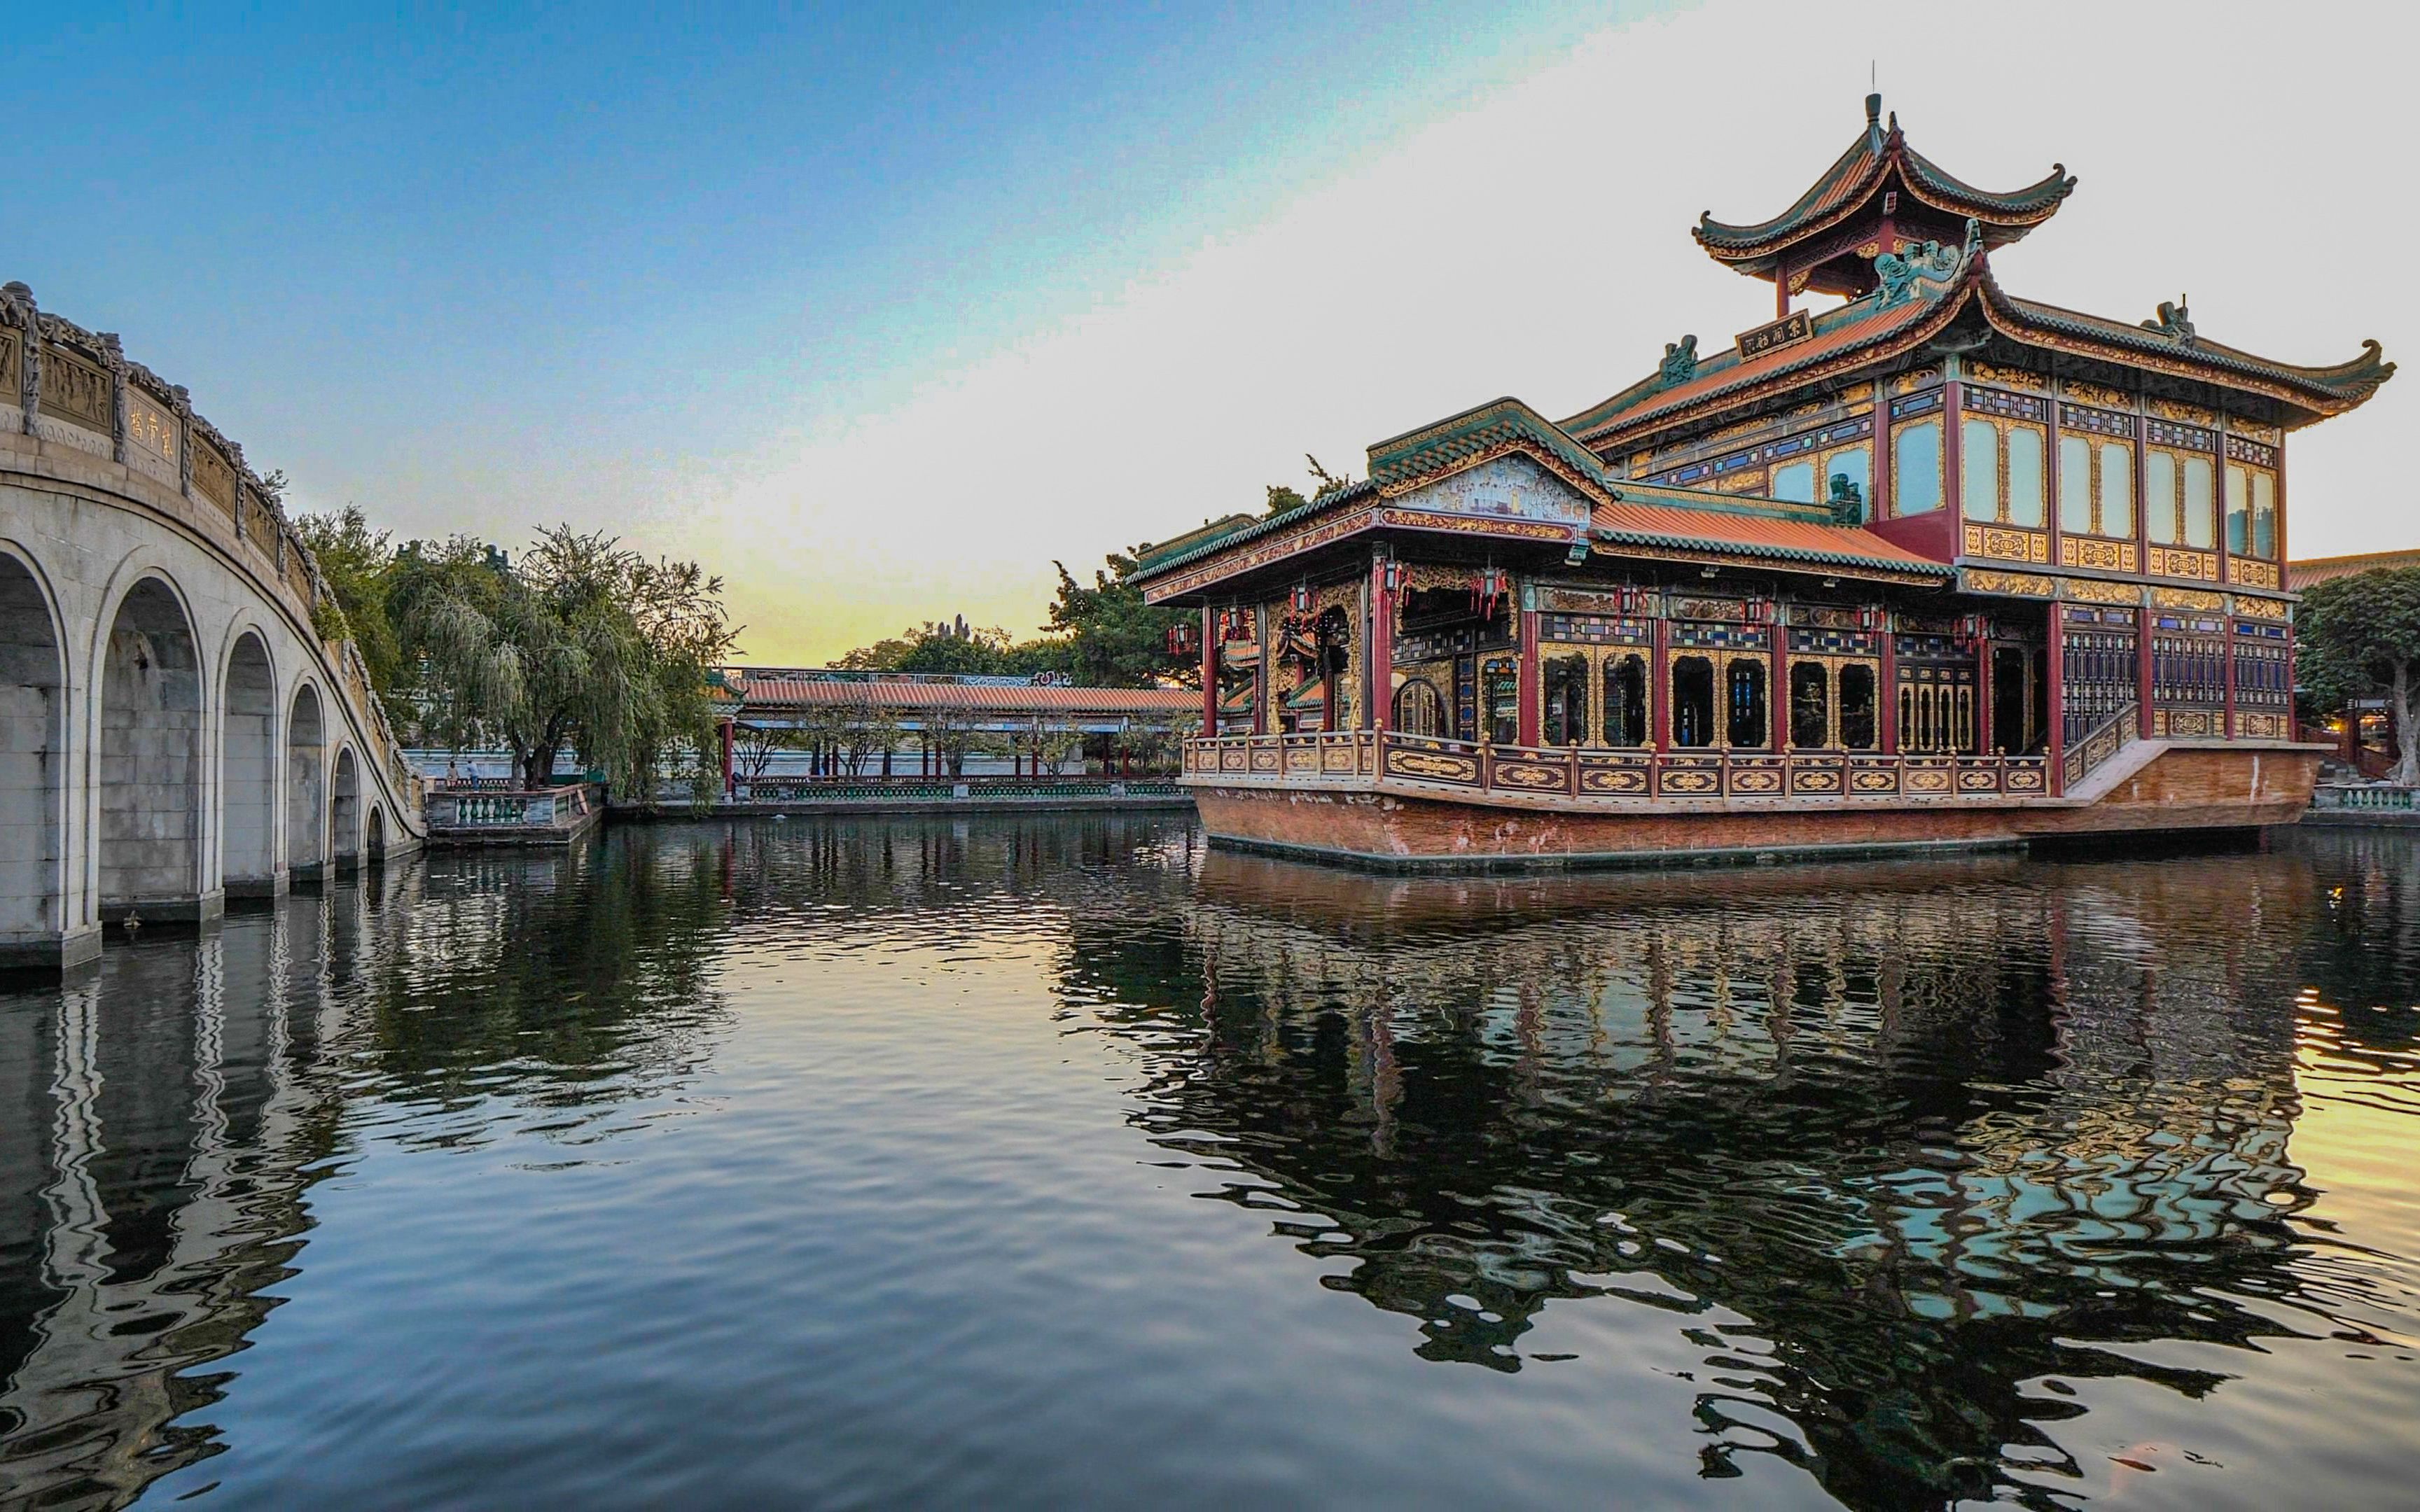 漫游广州宝墨园,颇具特色的岭南文化园林